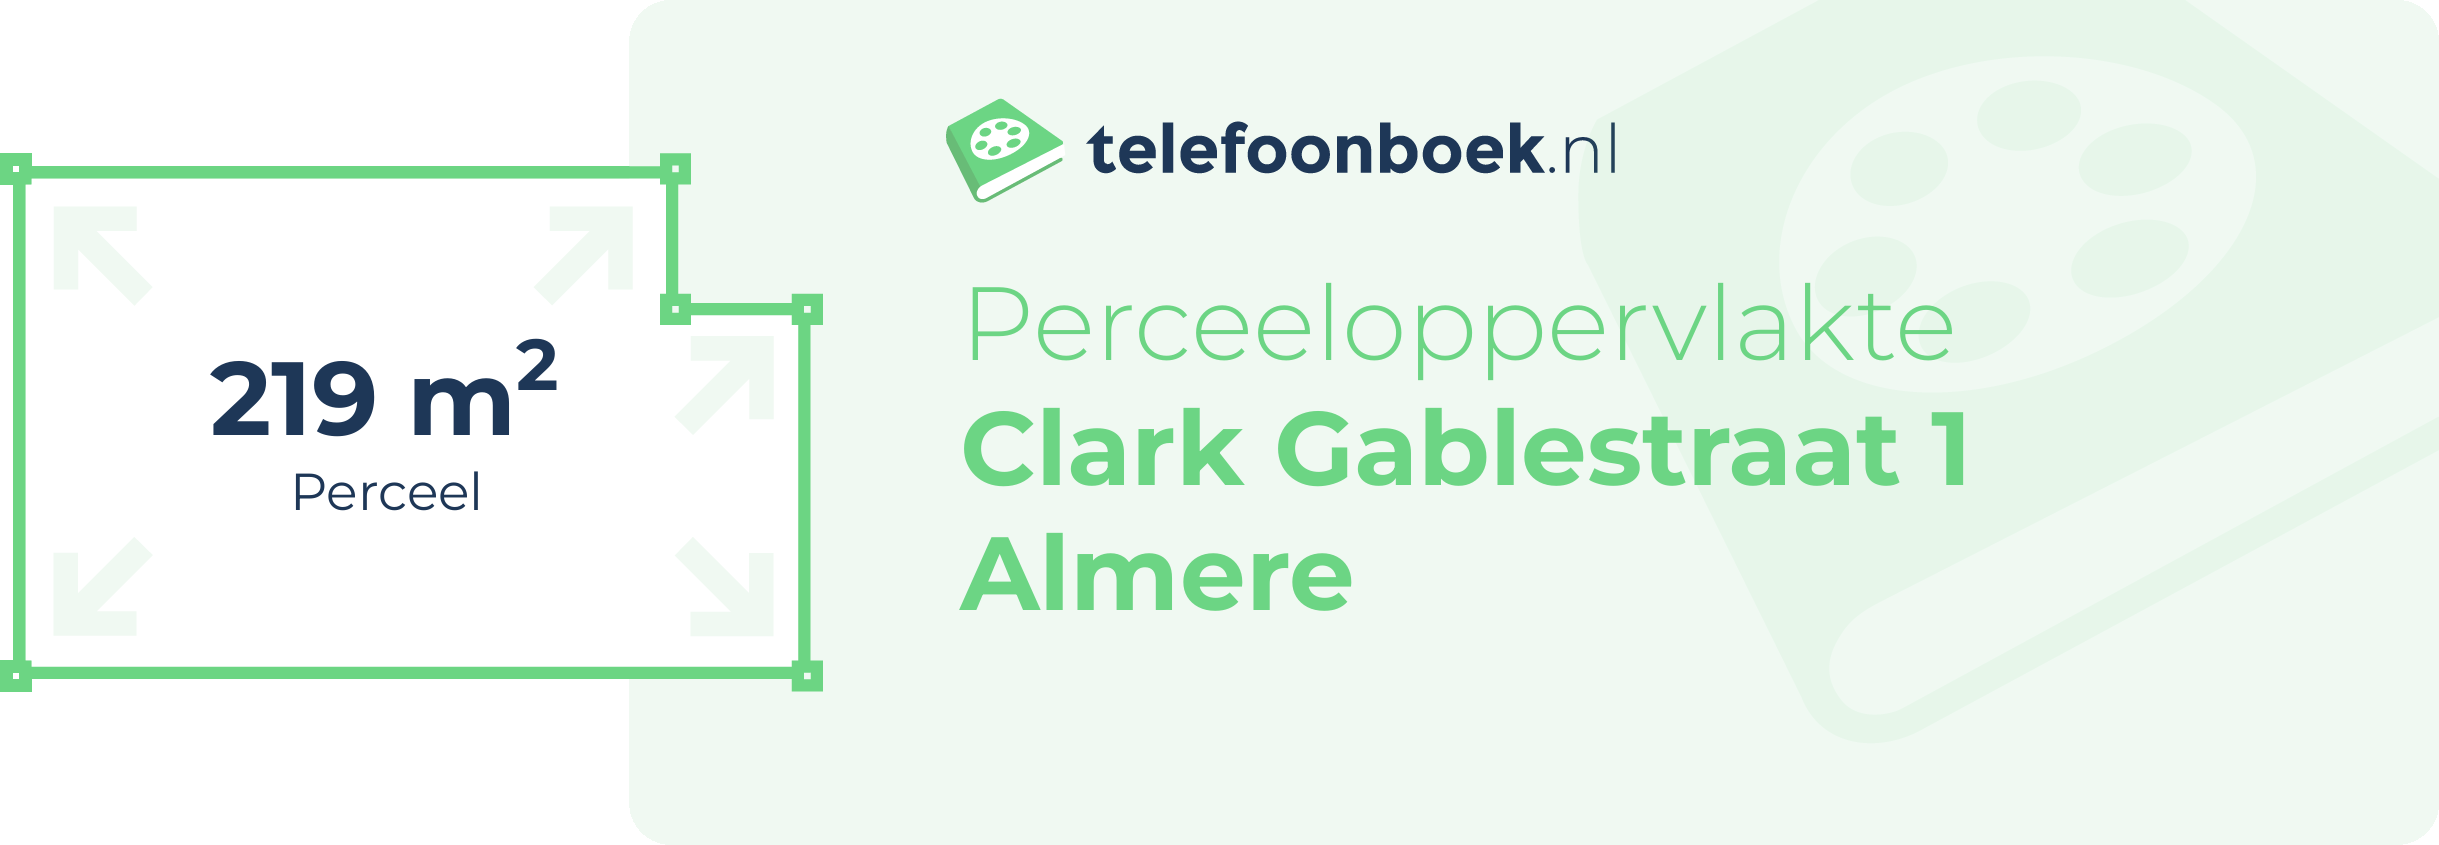 Perceeloppervlakte Clark Gablestraat 1 Almere